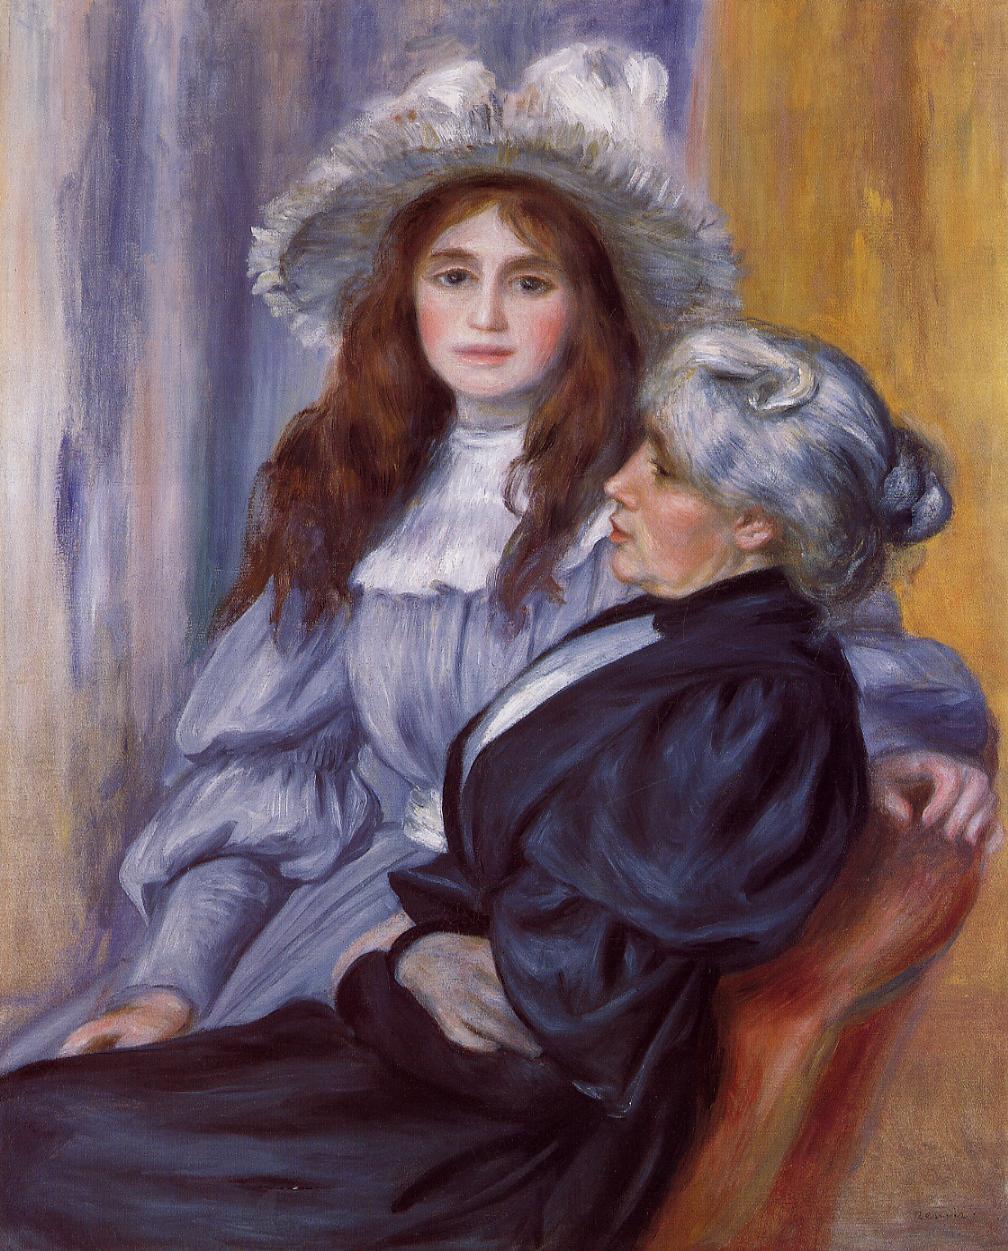 Berthe Morisot et sa fille Julie Manet by Pierre-Auguste Renoir - 1894 collection privée